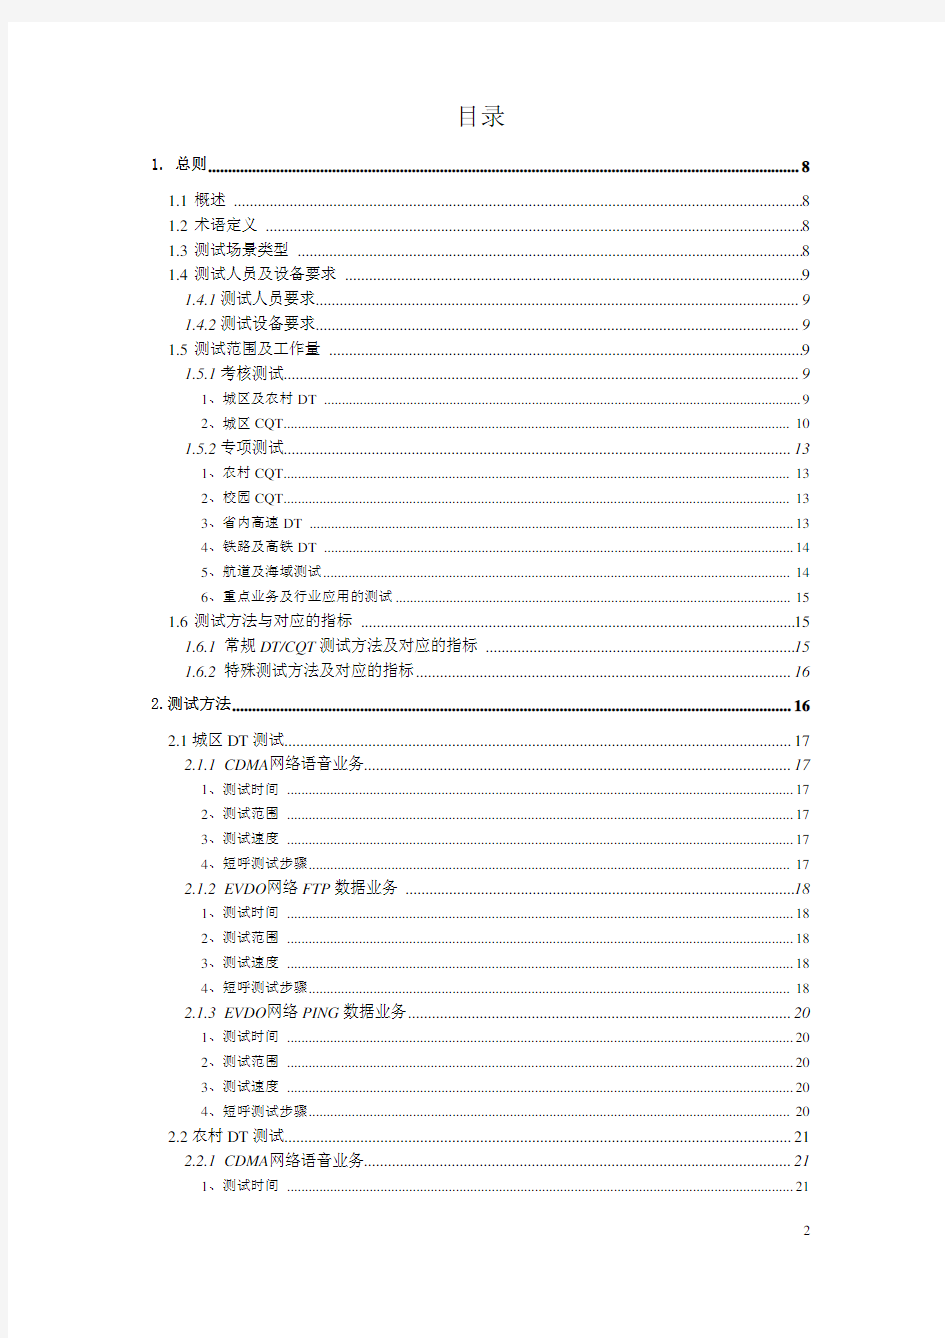 中国电信CDMA网络DTCQT测试技术规范(2012版)